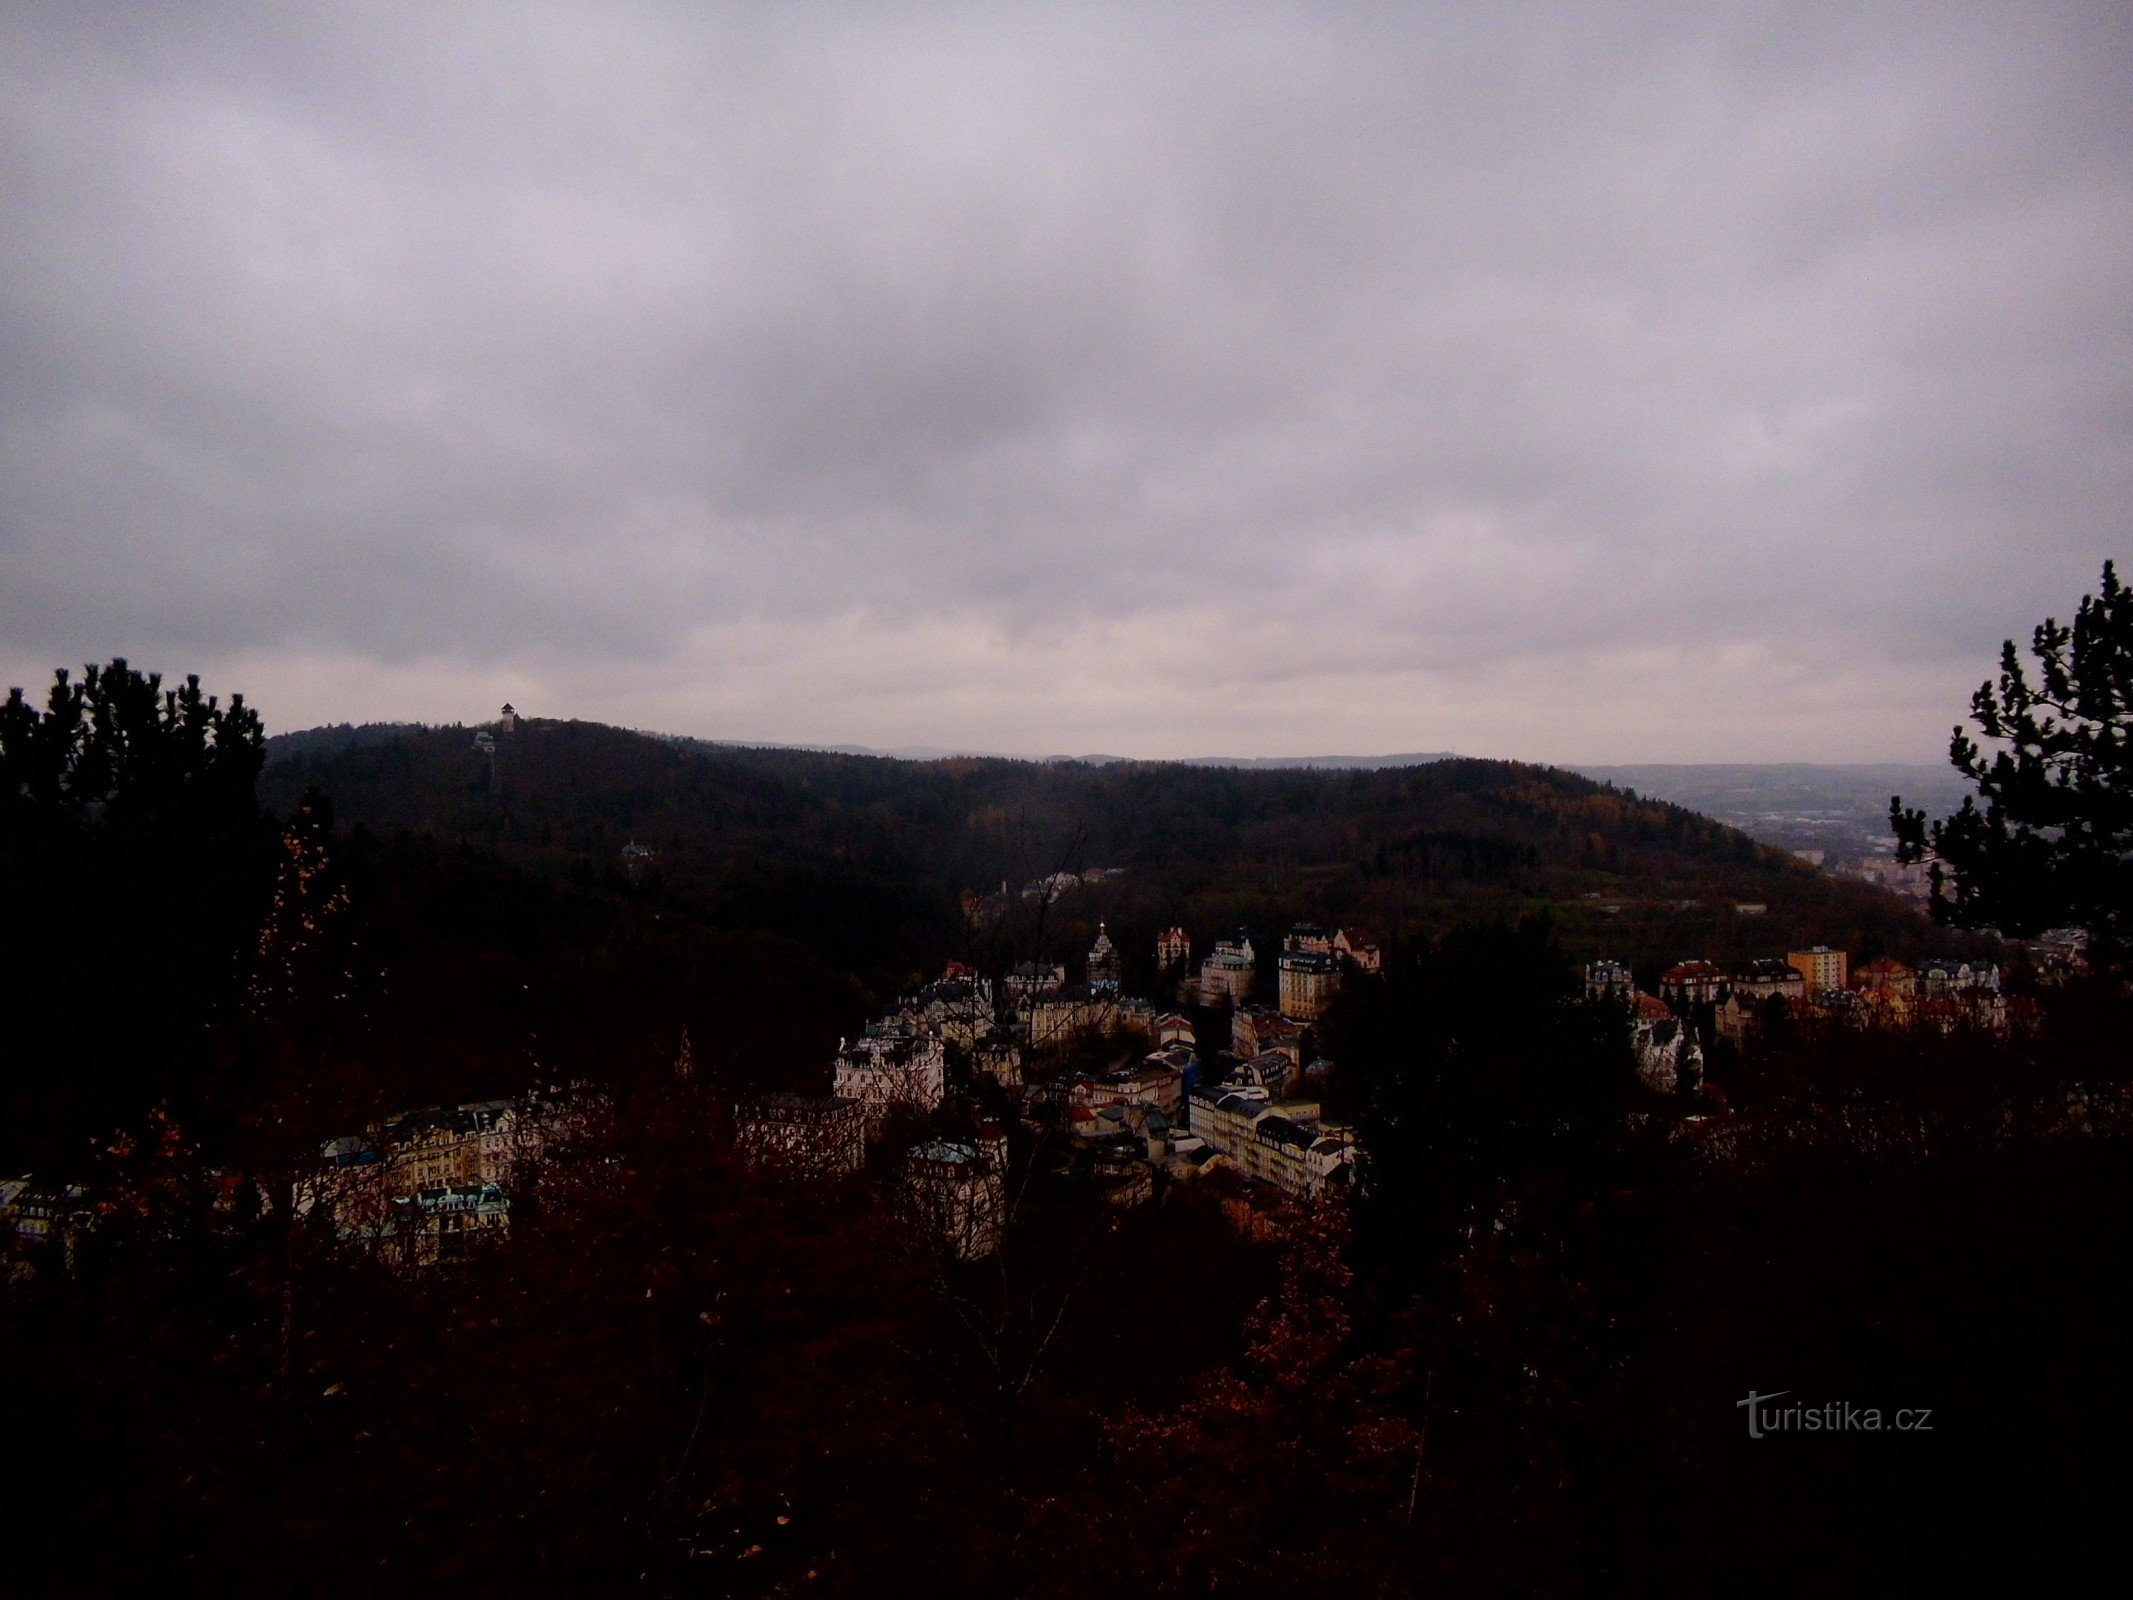 Rund um Karlovy Vary - durch die Drei Kreuze, den Aussichtsturm und das Observatorium